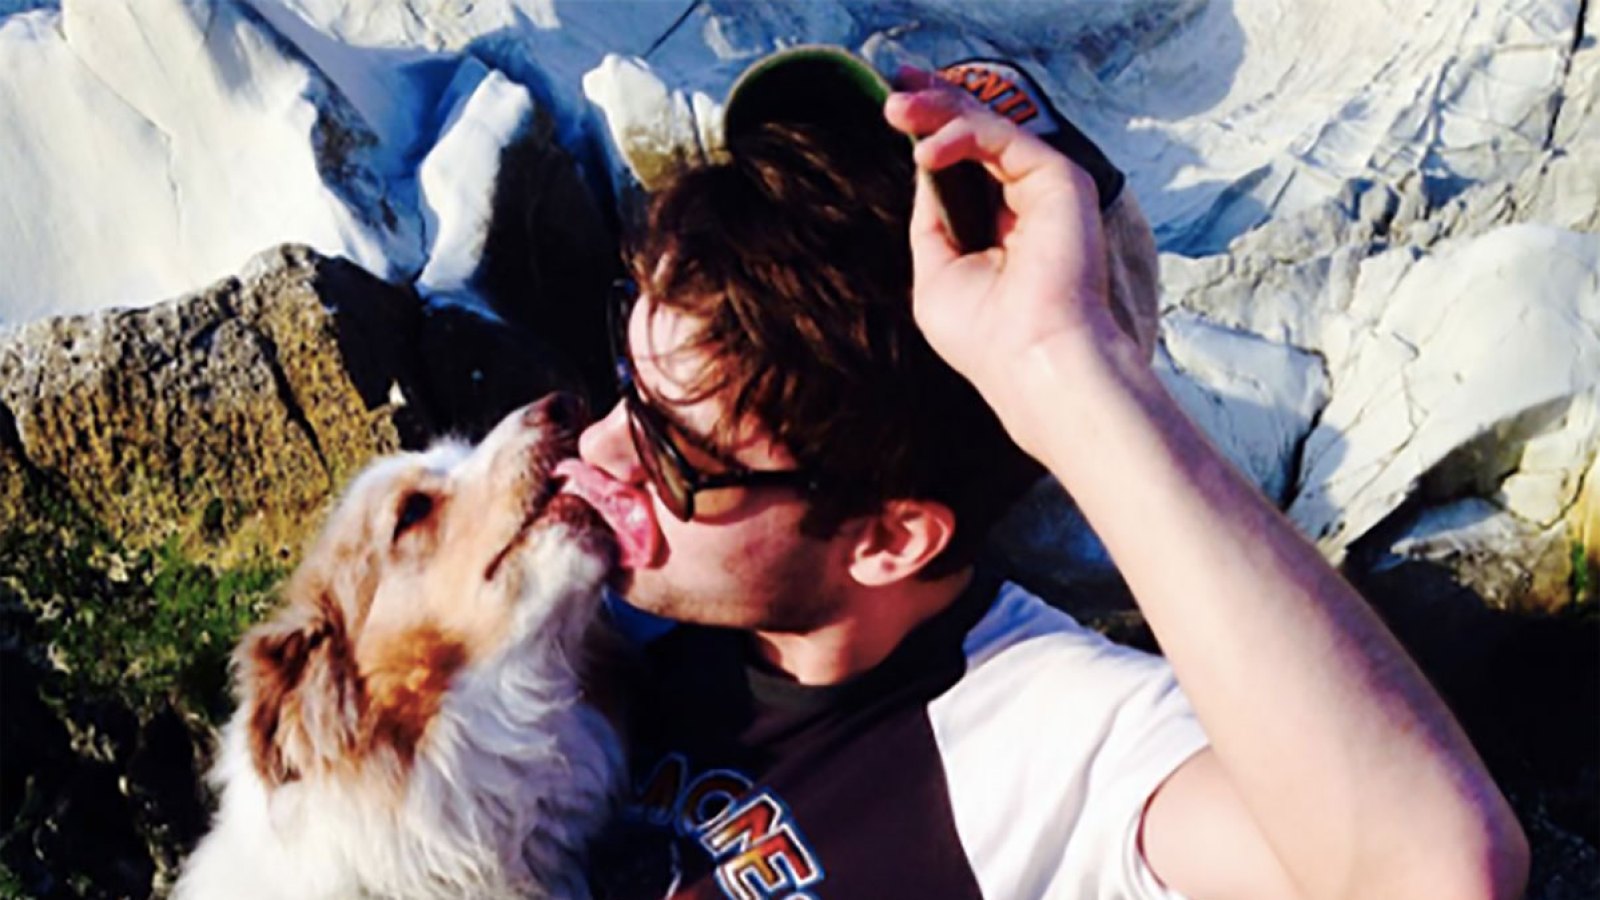 Zac Efron's beloved dog has died.